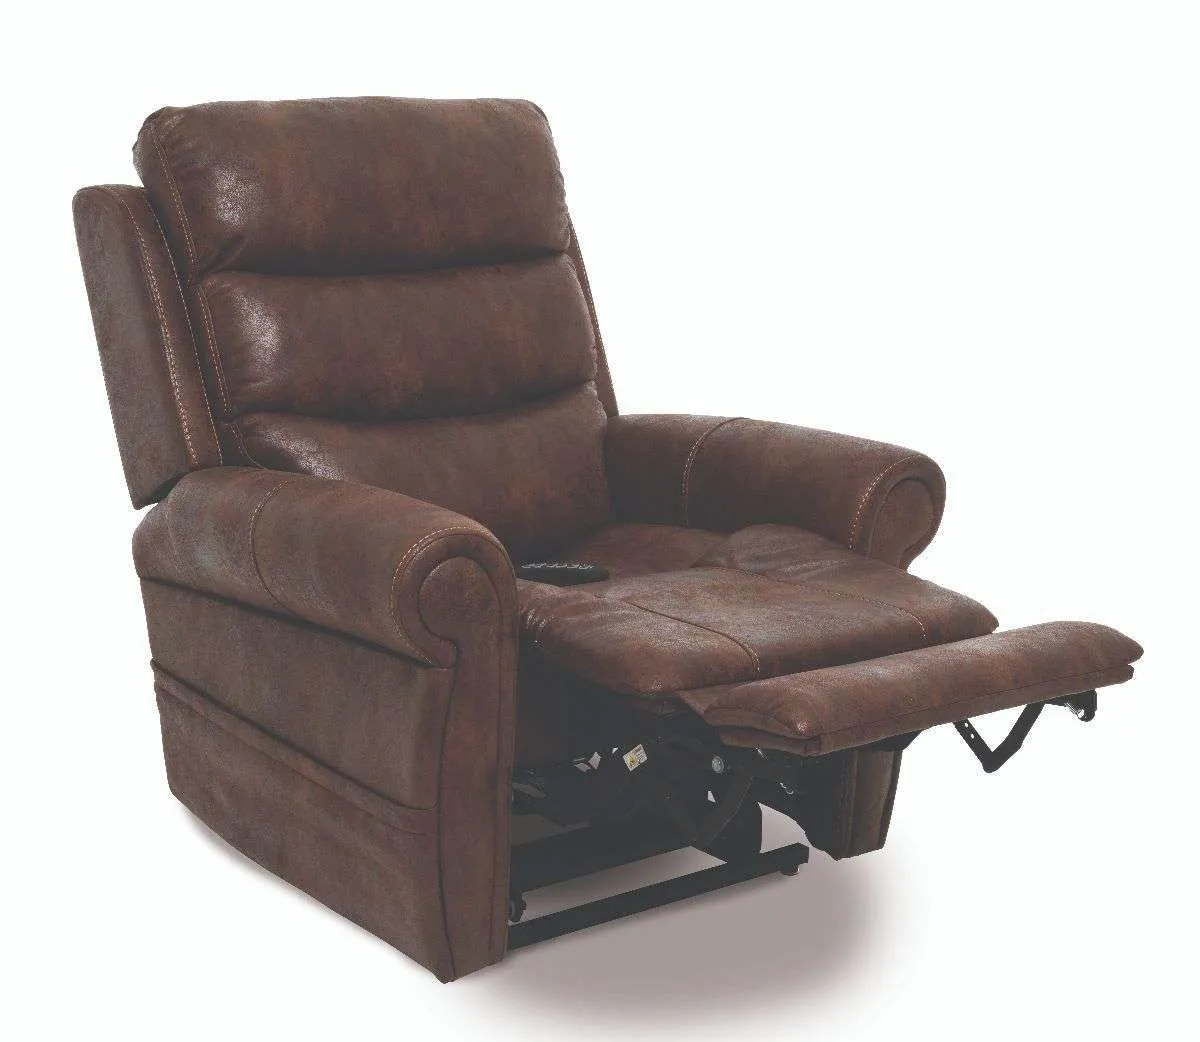 VivaLift!® Ultra - PLR-4955 VivaLift!® Ultra - PLR-4955 - Lift Chair